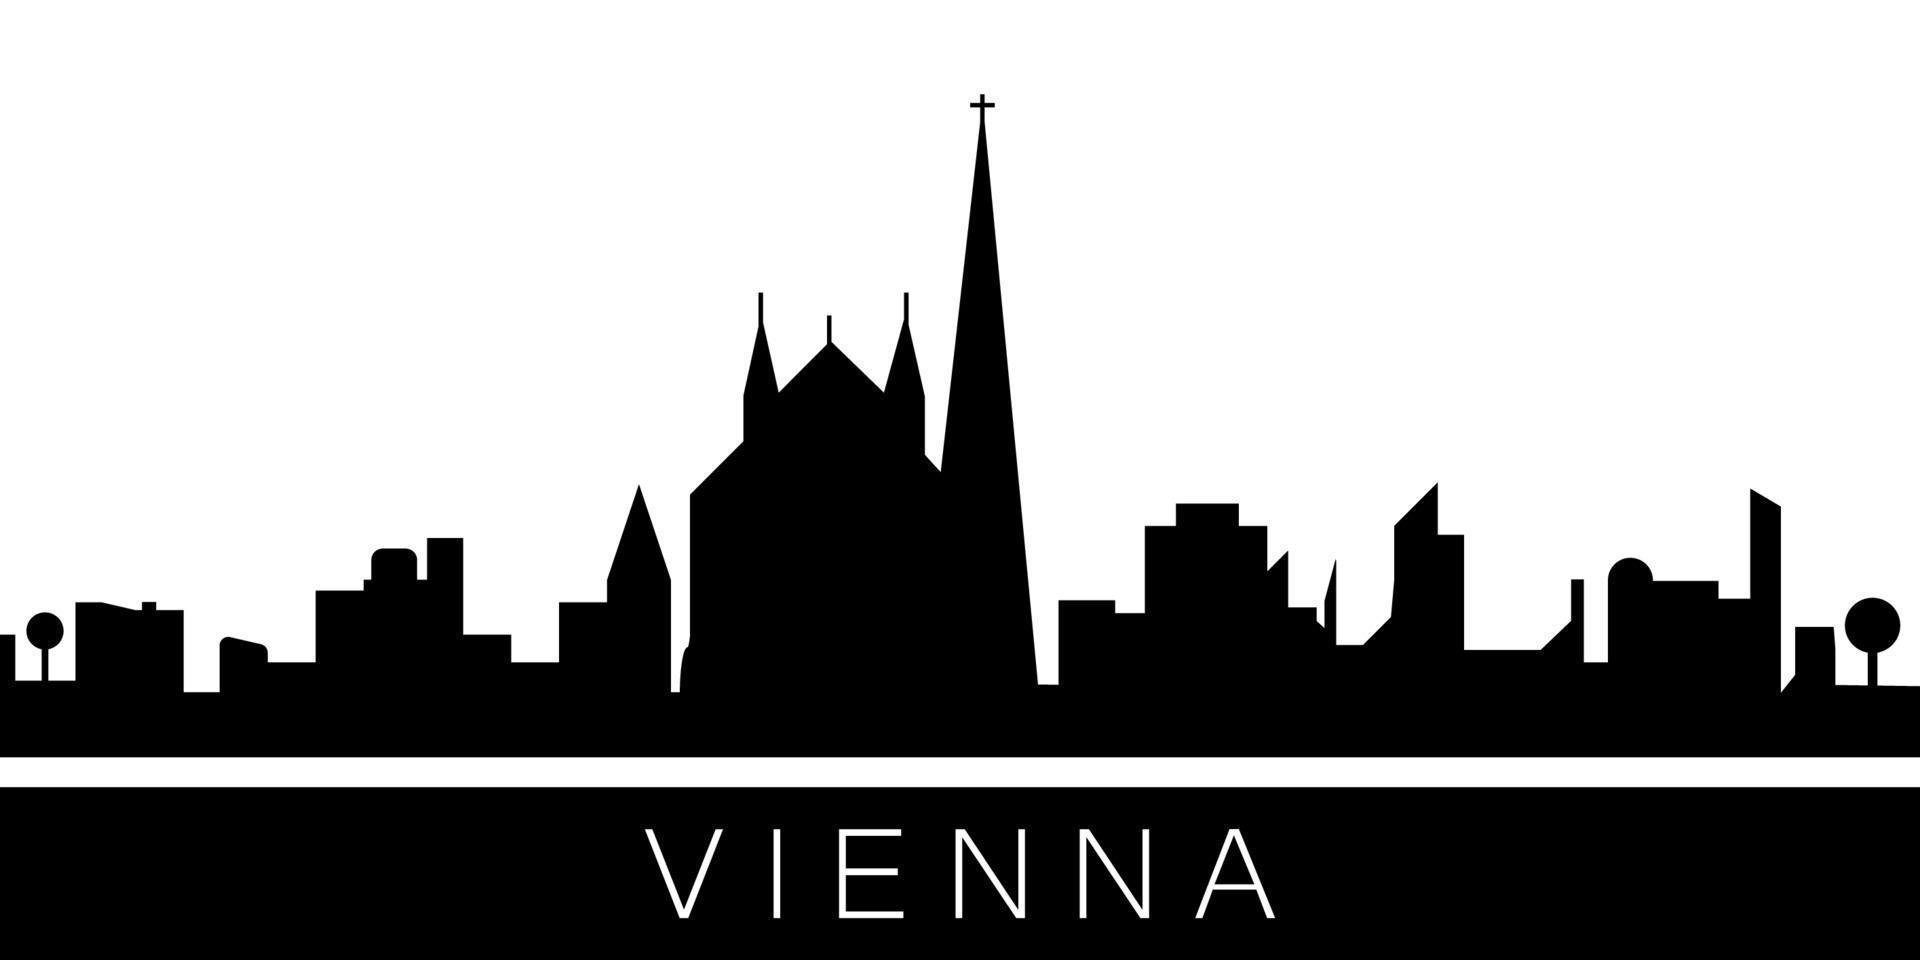 Vienna detailed skyline vector